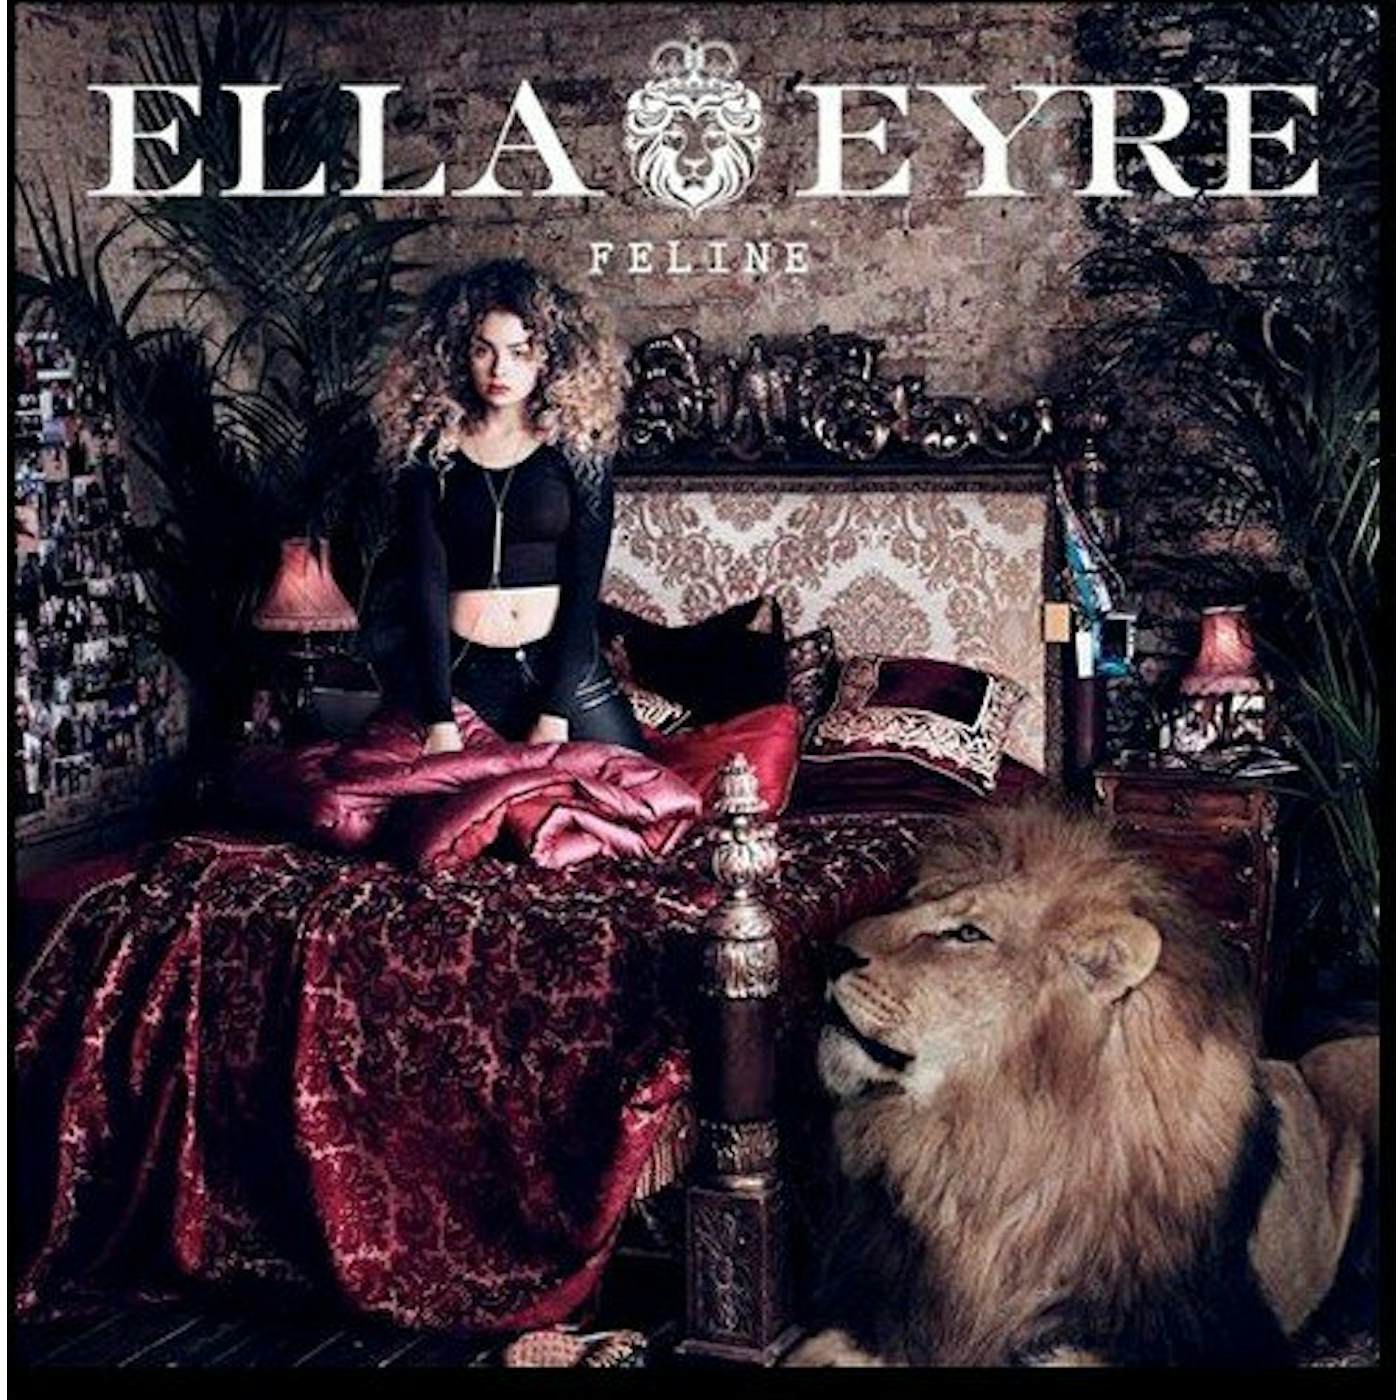 Ella Eyre FELINE: DELUXE CD